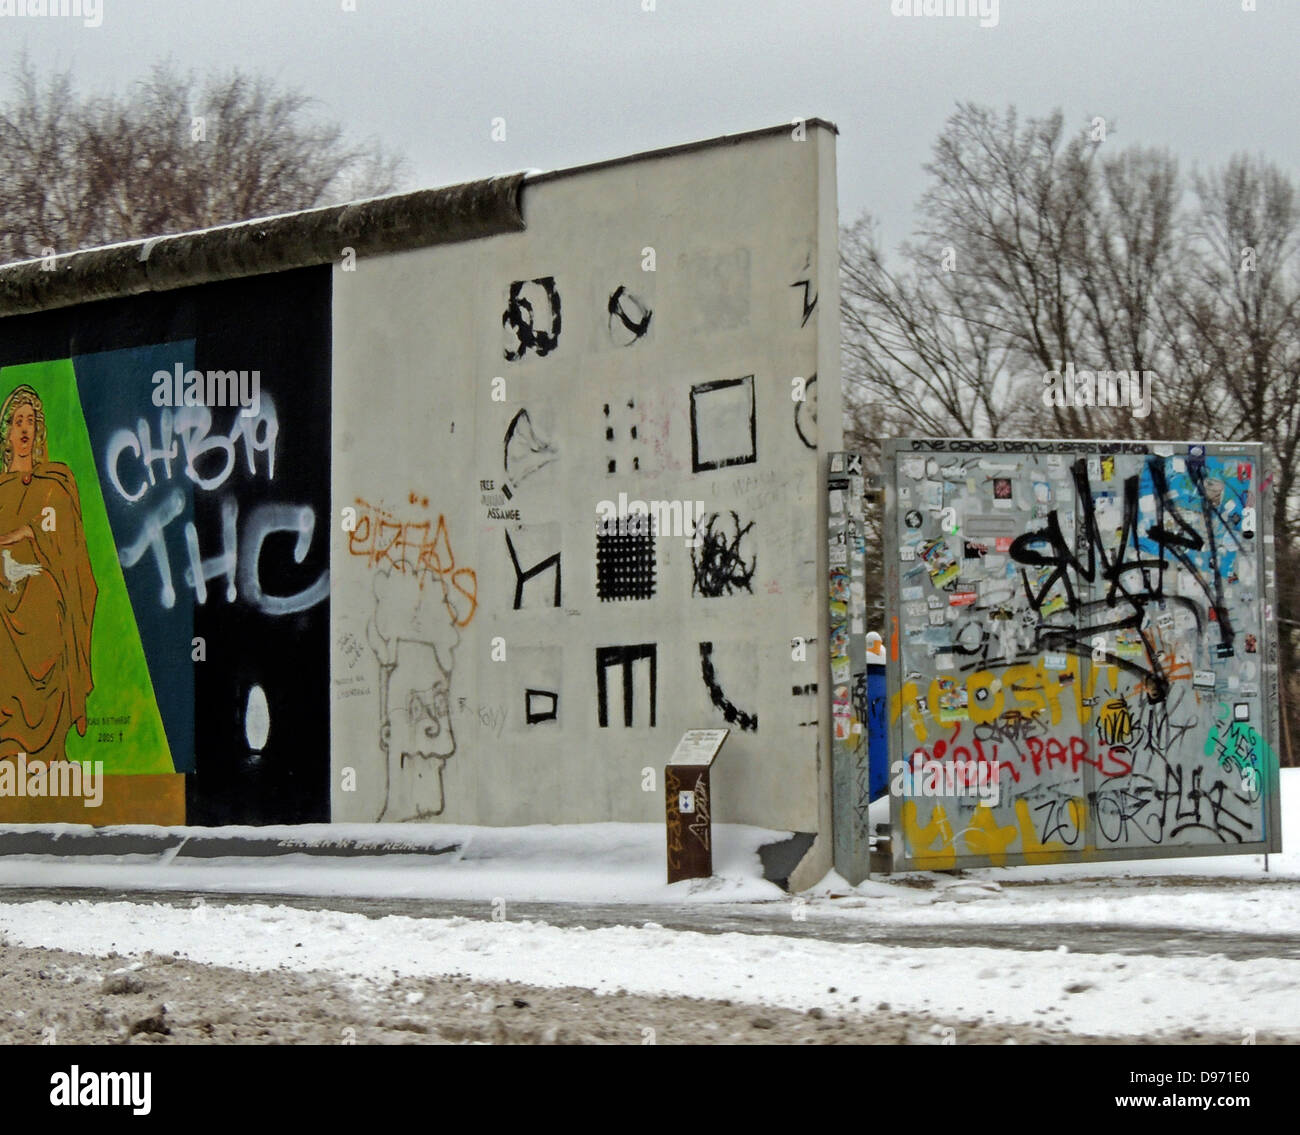 El muro de Berlín 1961-1989. Graffiti en la parte restante de la pared. La barrera construida por la Alemania oriental cortado completamente (por tierra), Berlín Occidental desde que rodea la parte oriental de Alemania y en Berlín Oriental. La barrera incluye torres de vigilancia colocados a lo largo de grandes muros de hormigón que circunscribe un área amplia (más tarde conocida como la 'muerte strip') que contenía anti-vehículo trincheras y otras defensas. Alrededor de 5.000 personas intentaron llegar a través de la pared, con una tasa de mortalidad de más de 600. Foto de stock